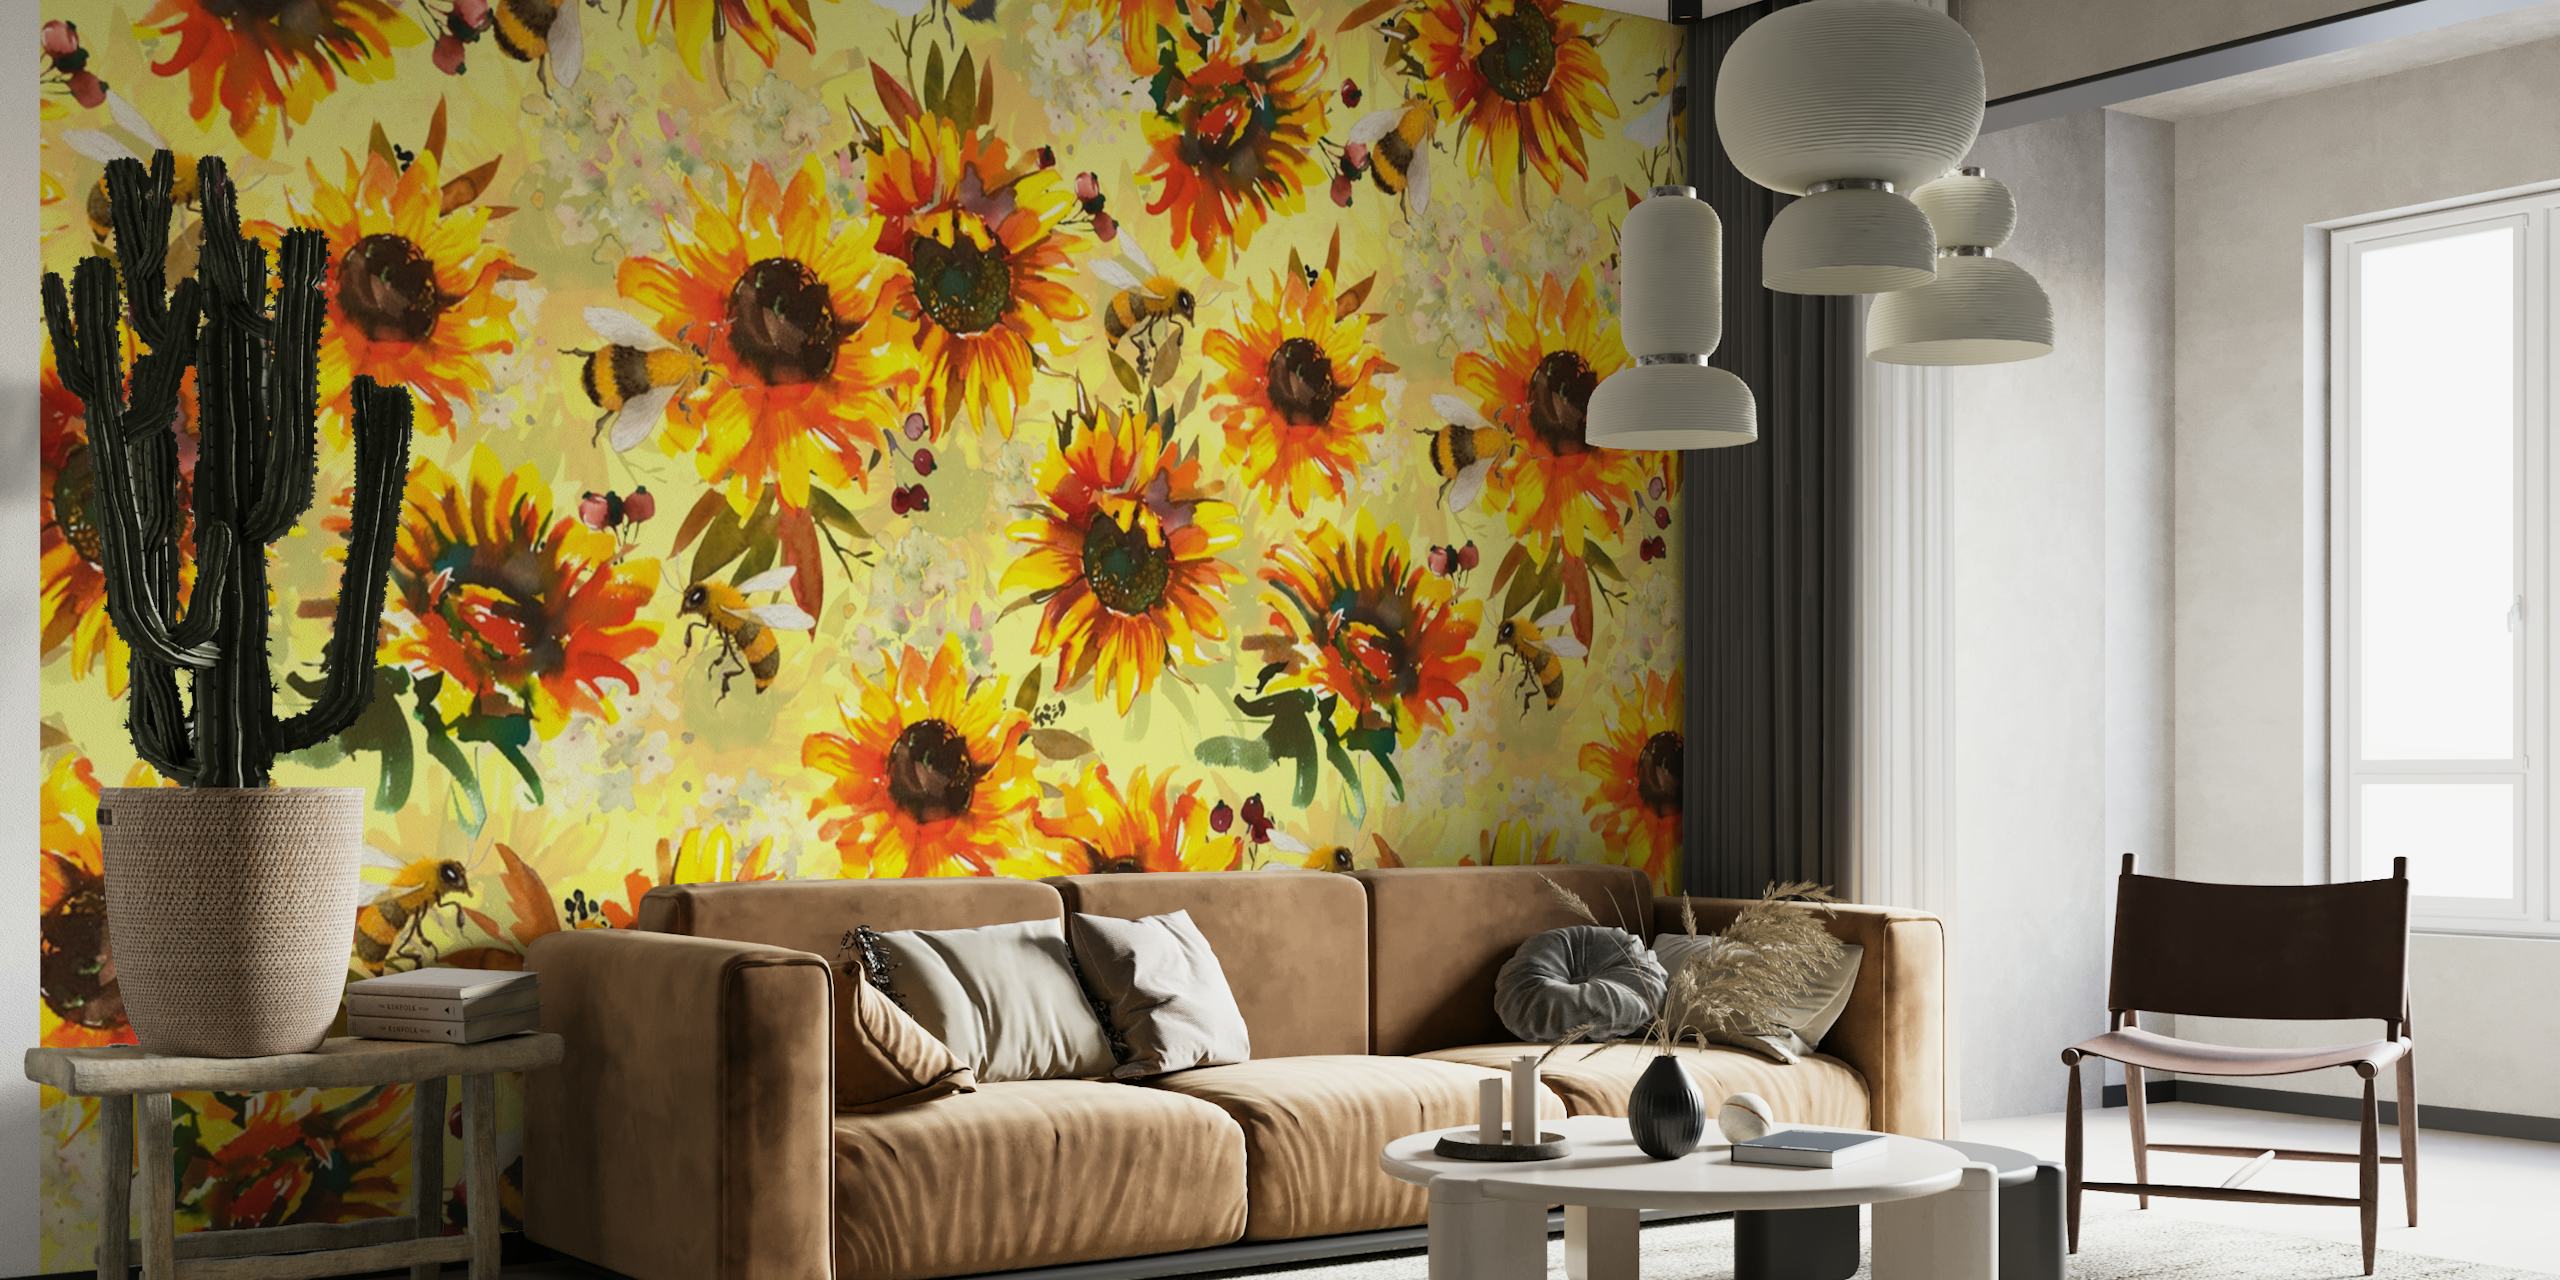 Motif de tournesols et d'abeilles sur une fresque murale à l'ambiance lumineuse et estivale.